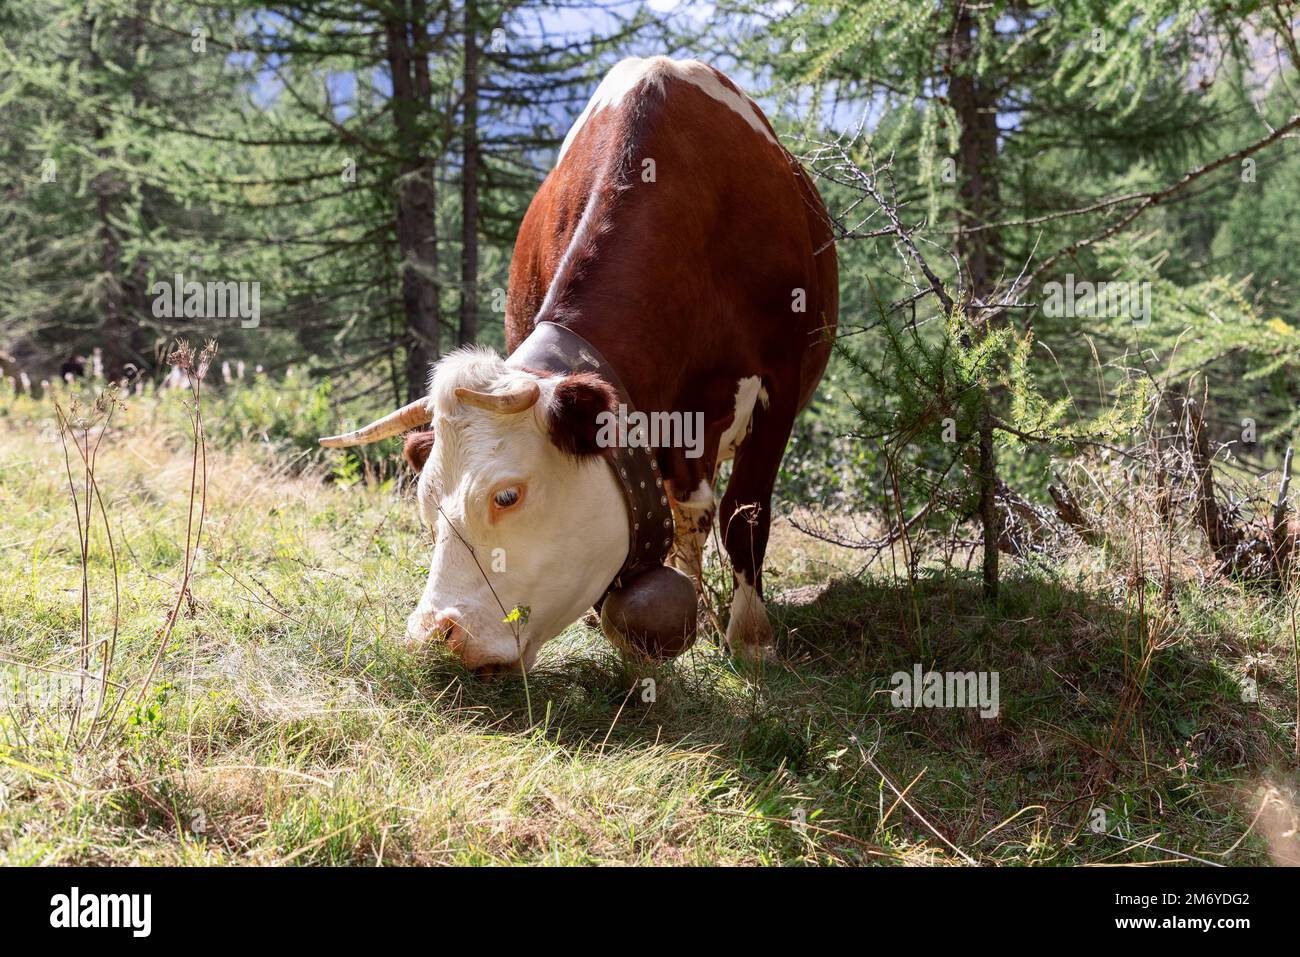 Adorable vache à peau brune et cils blancs avec une grande cloche en métal sur une large sangle en cuir autour de son cou grignote un pré de montagne Banque D'Images